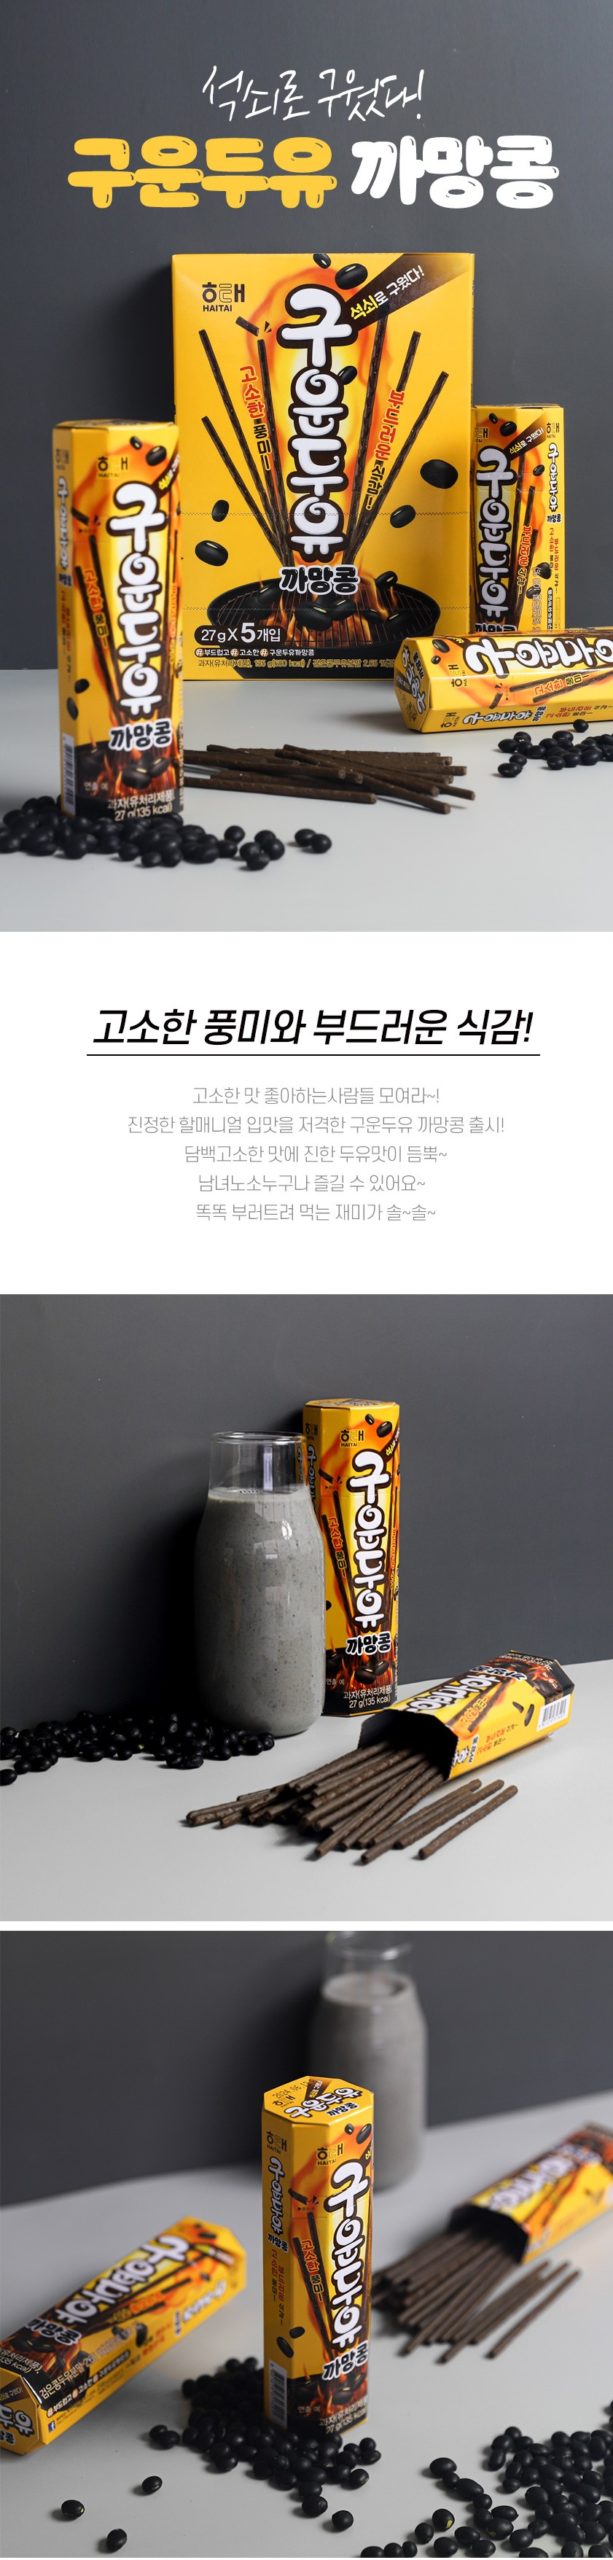 韓國食品-[해태] 구운두유 (까망콩) 27g